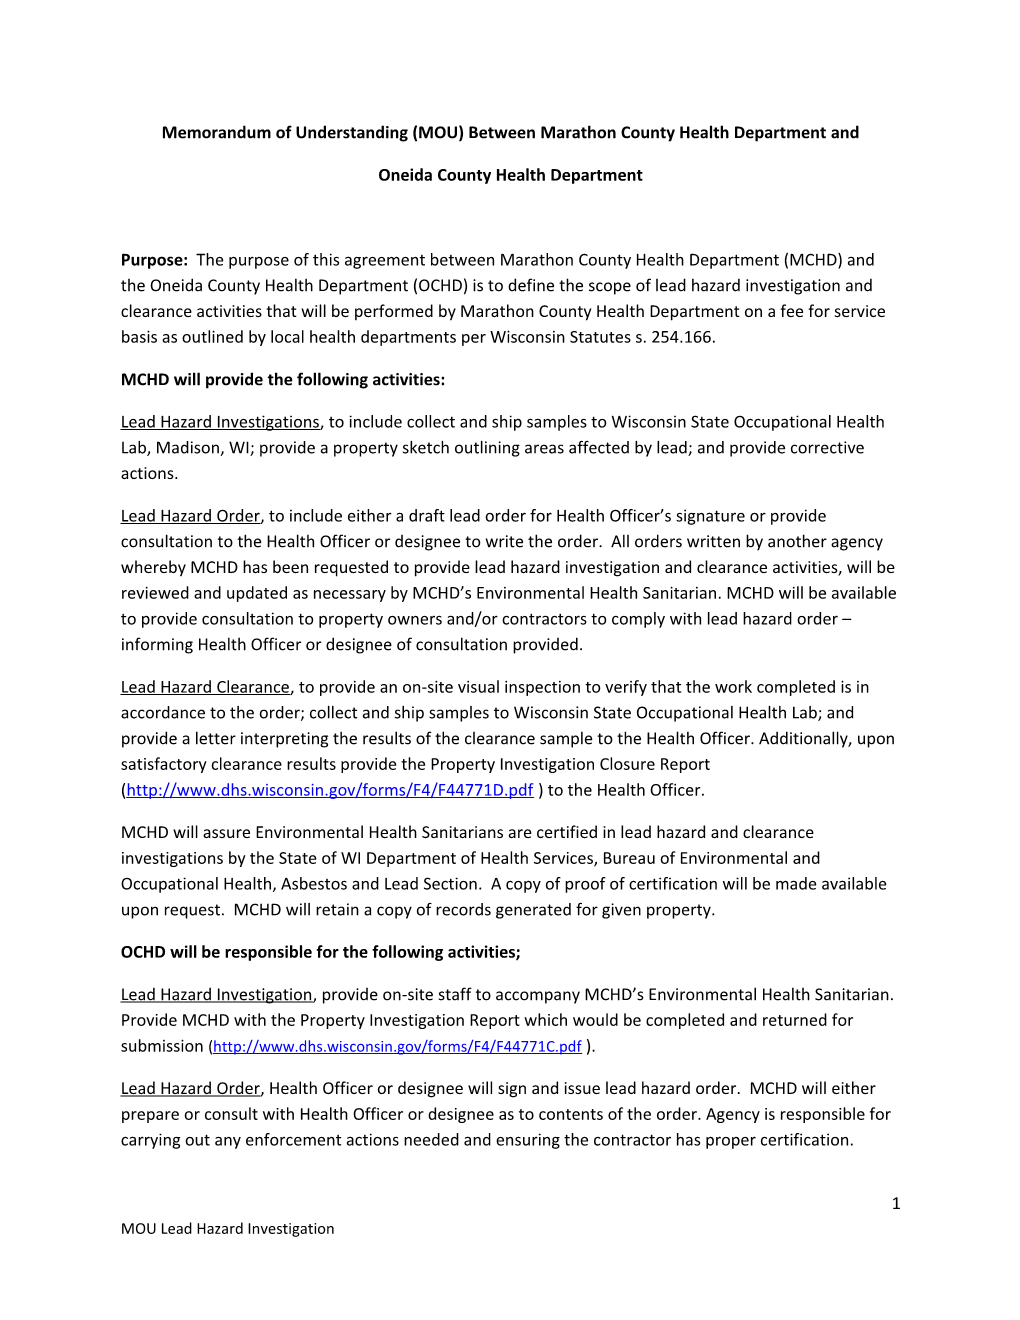 Memorandum of Understanding (MOU) Between Marathon County Health Department And